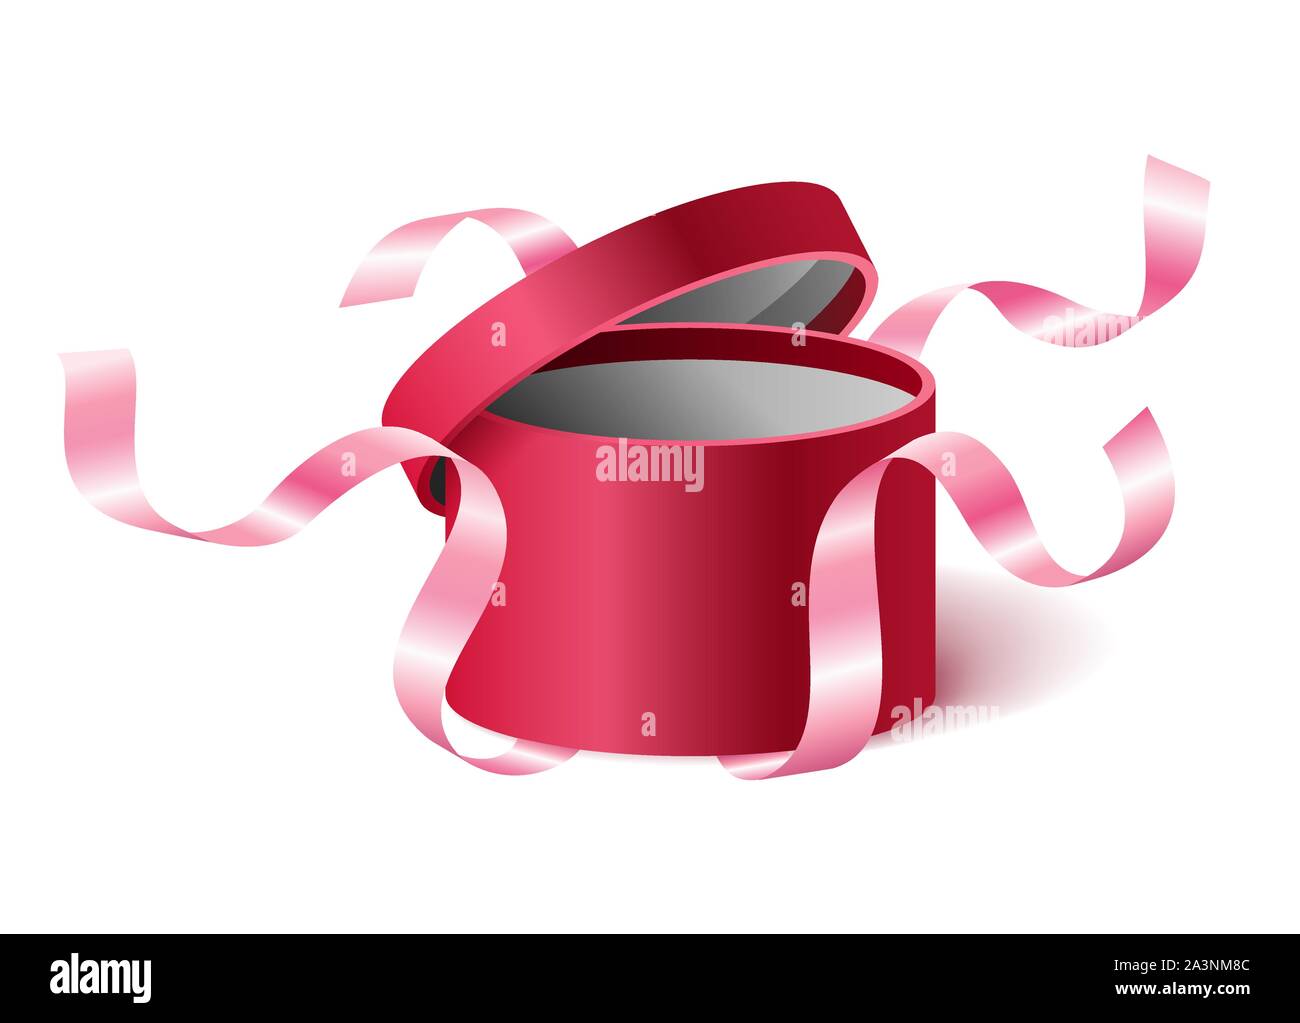 Rosa Rossa aperto 3D realistici round confezione regalo con battenti fuori i nastri e il luogo per il vostro testo, casella realistico illustrazione vettoriale. Illustrazione Vettoriale